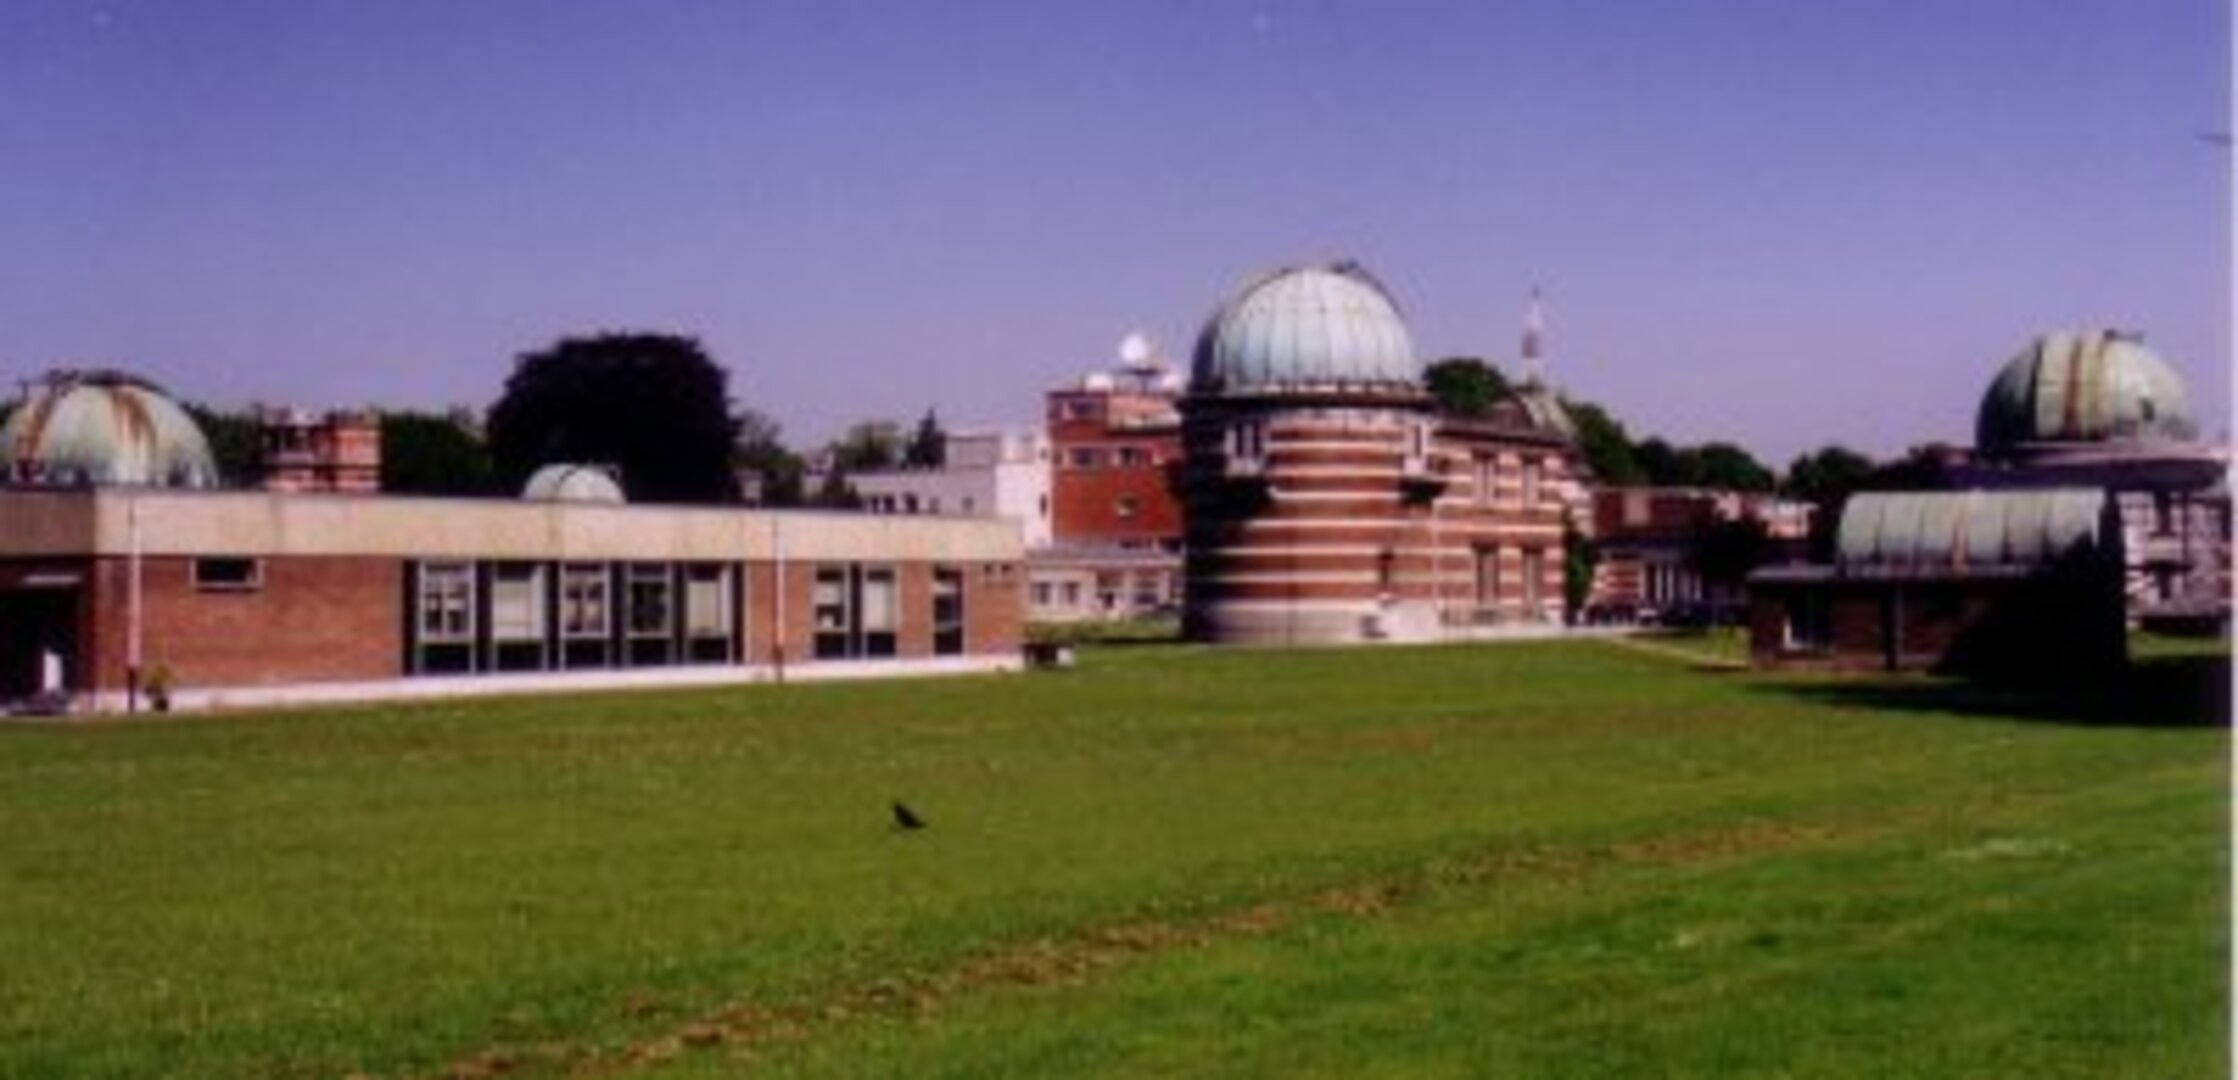 Les télescopes de l'Observatoire et les équipements de collecte des données météo